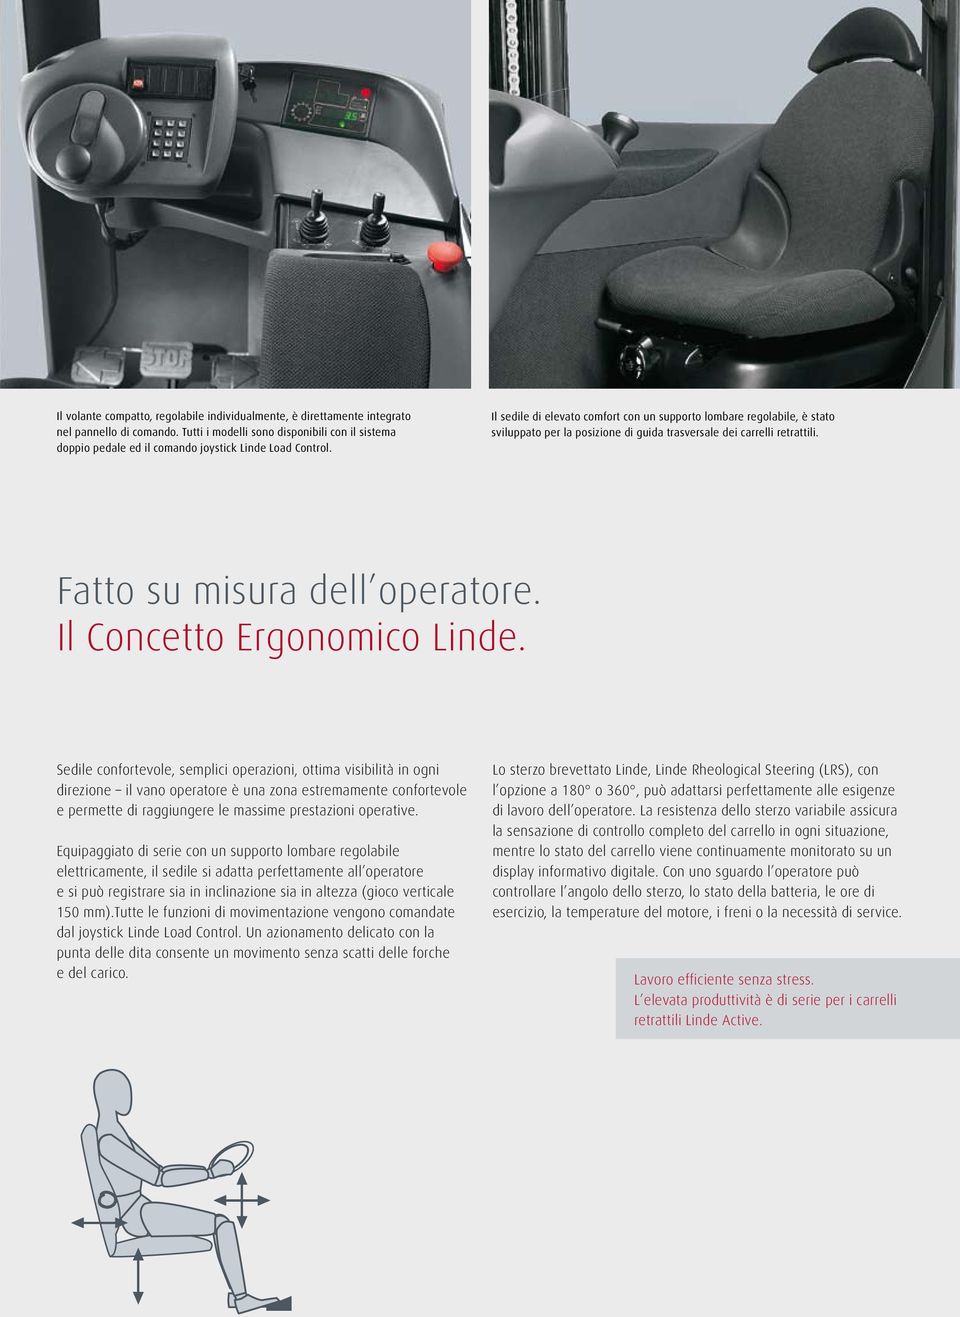 Il sedile di elevato comfort con un supporto lombare regolabile, è stato sviluppato per la posizione di guida trasversale dei carrelli retrattili. Fatto su misura dell operatore.